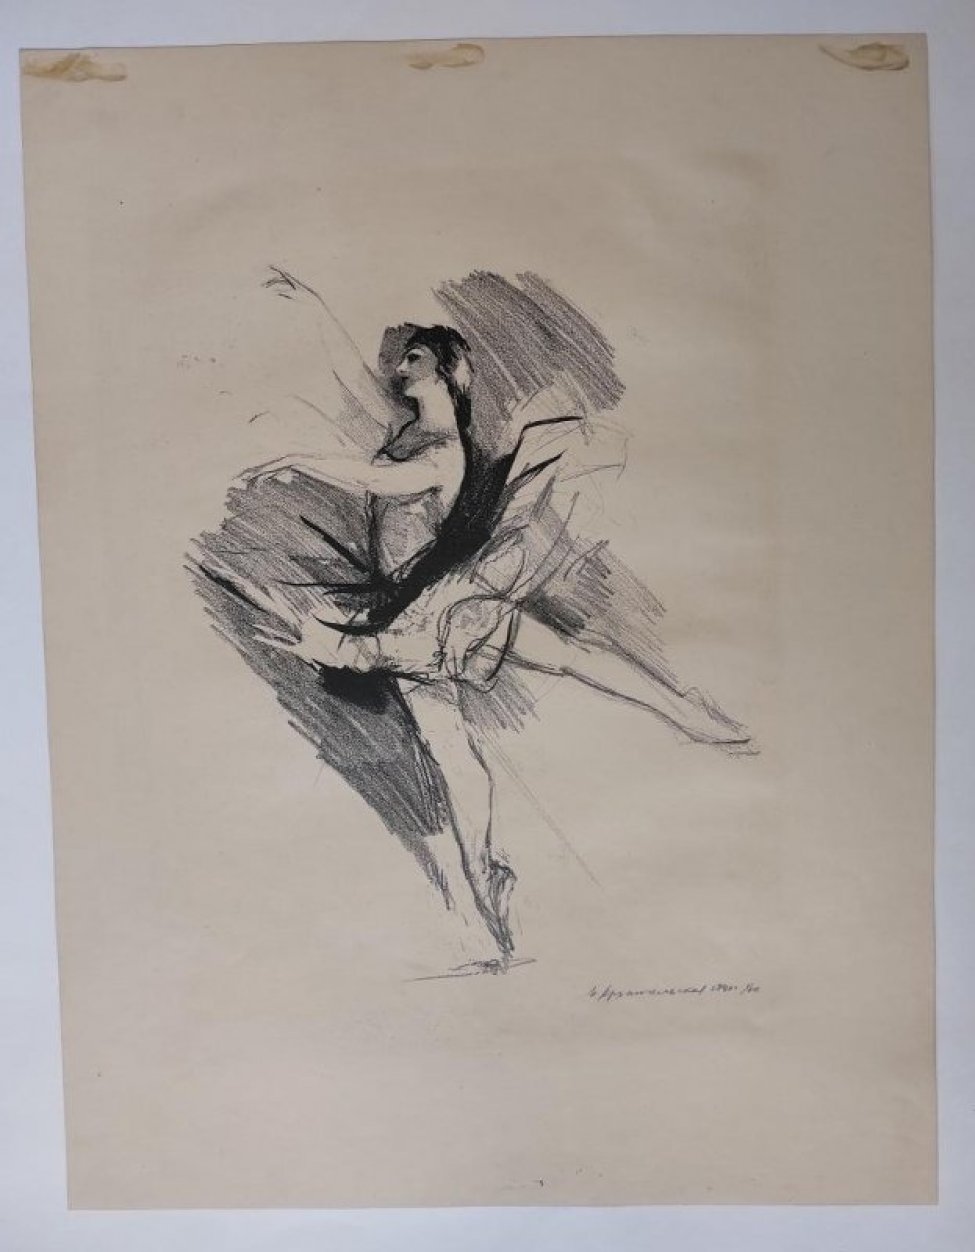 Изображена балерина на пальцах в позе арабеск (arabesque), обе руки перед собой.